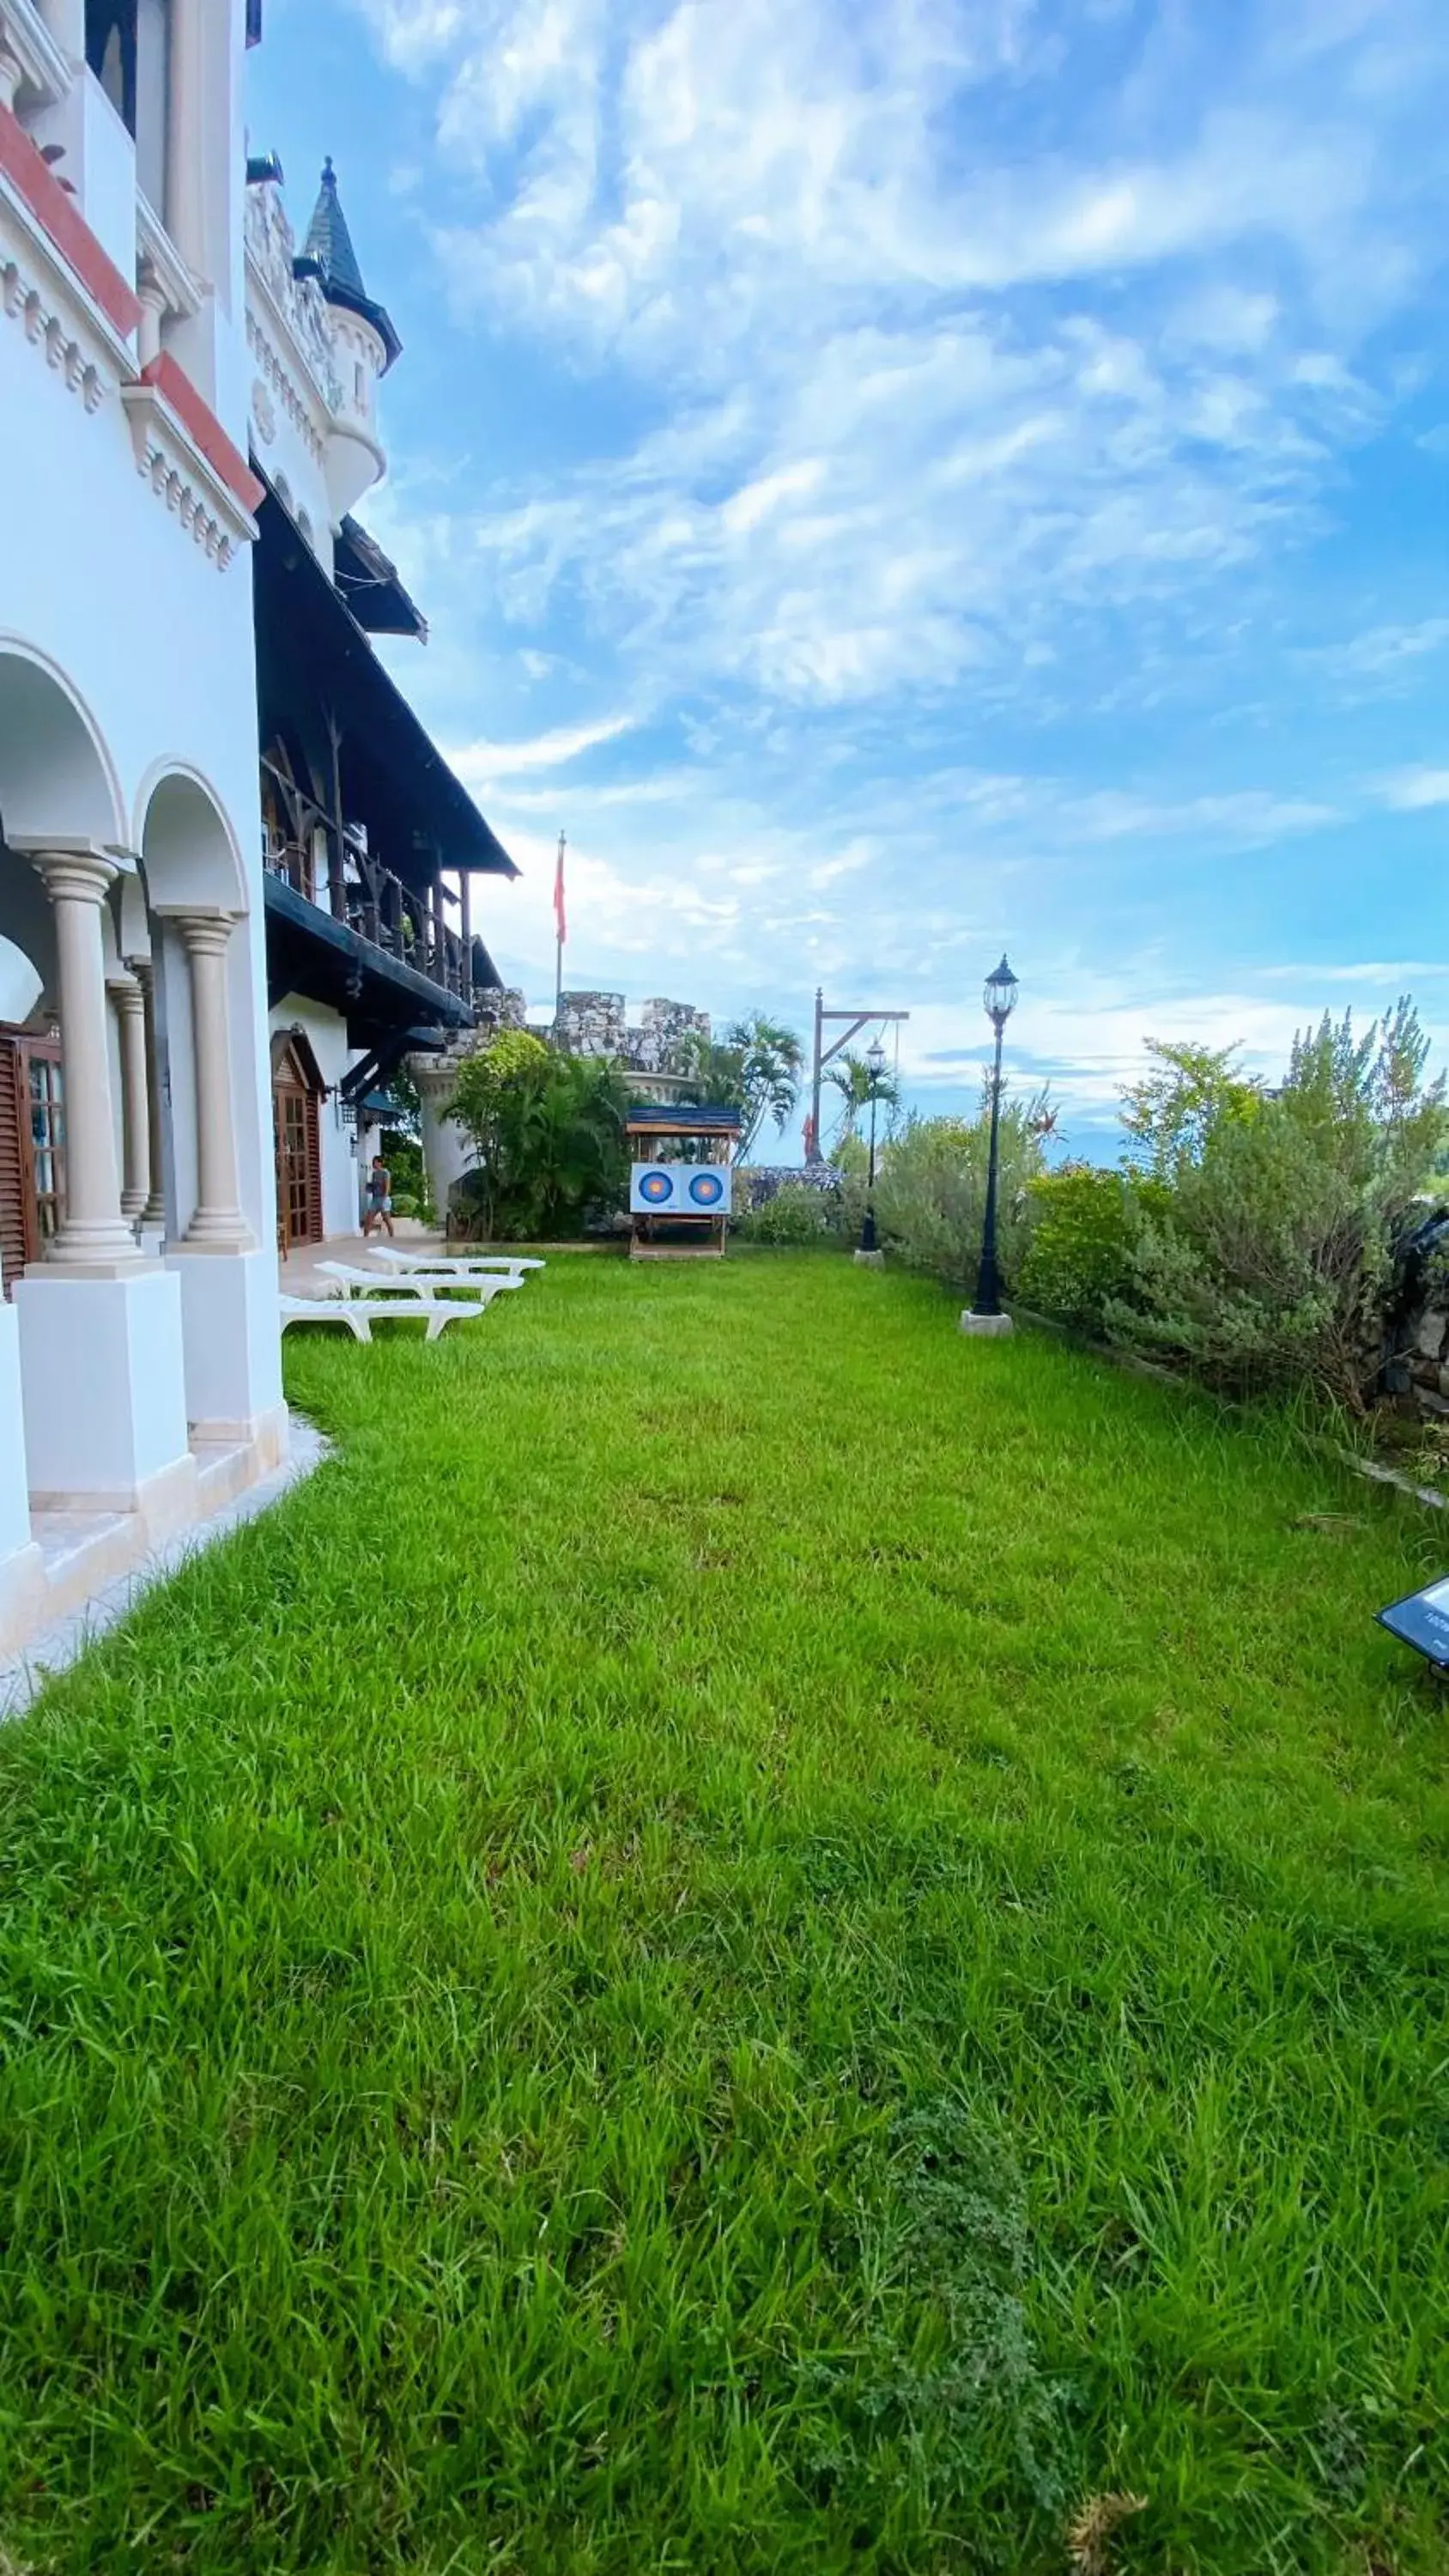 Activities, Garden in Tropicana Castle Dive Resort powered by Cocotel